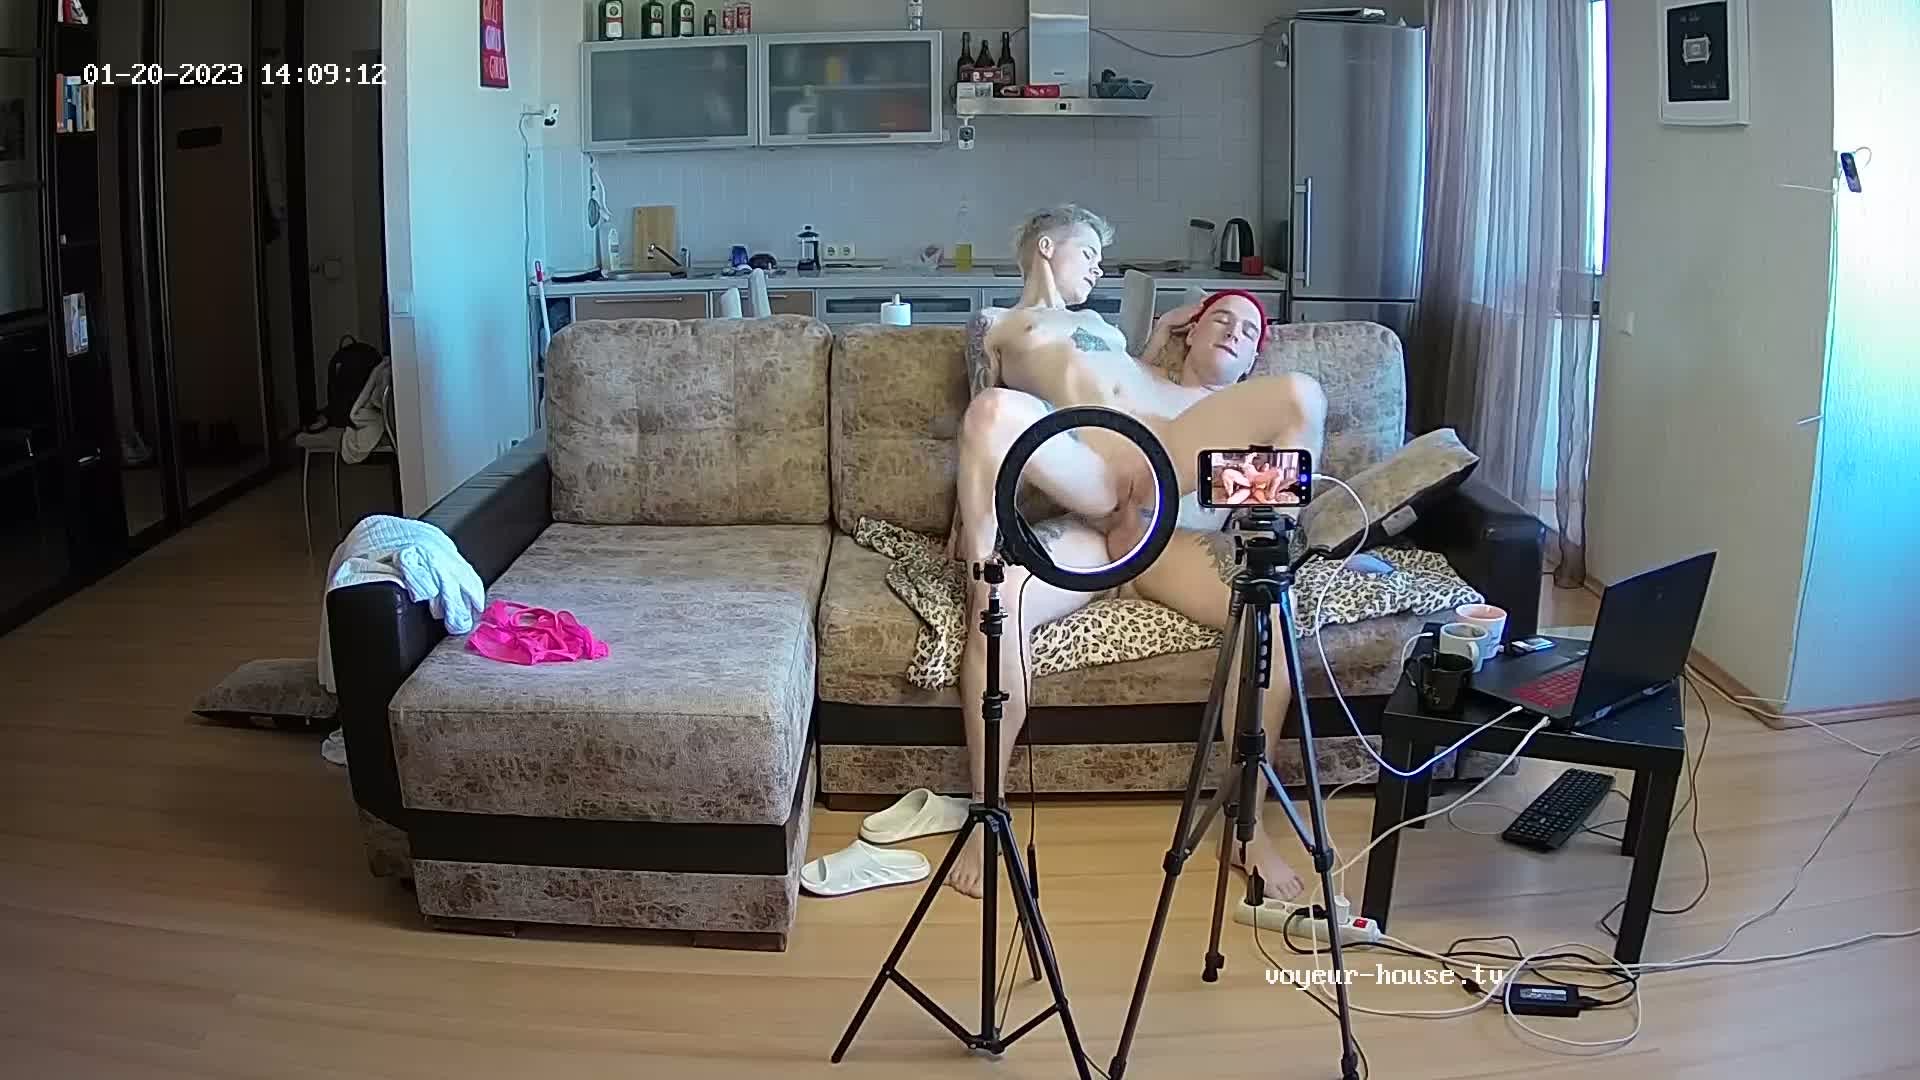 Dexter & Kelly - Hot webcam show| 2023-01-20